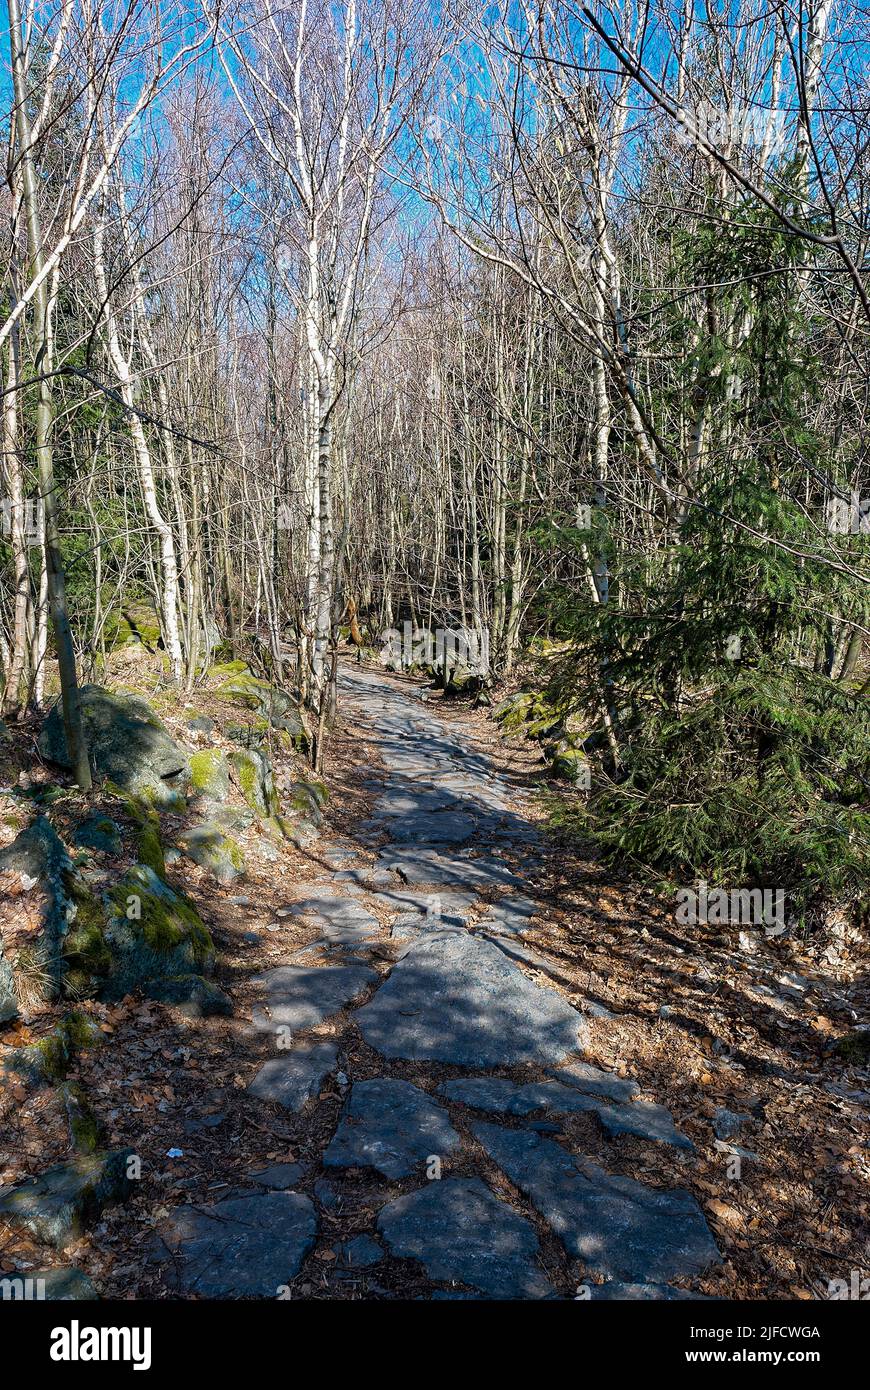 Strada di pietra in una foresta di betulla - foresta verticale. Foresta in primavera secca, ancora senza foglie. Foto Stock